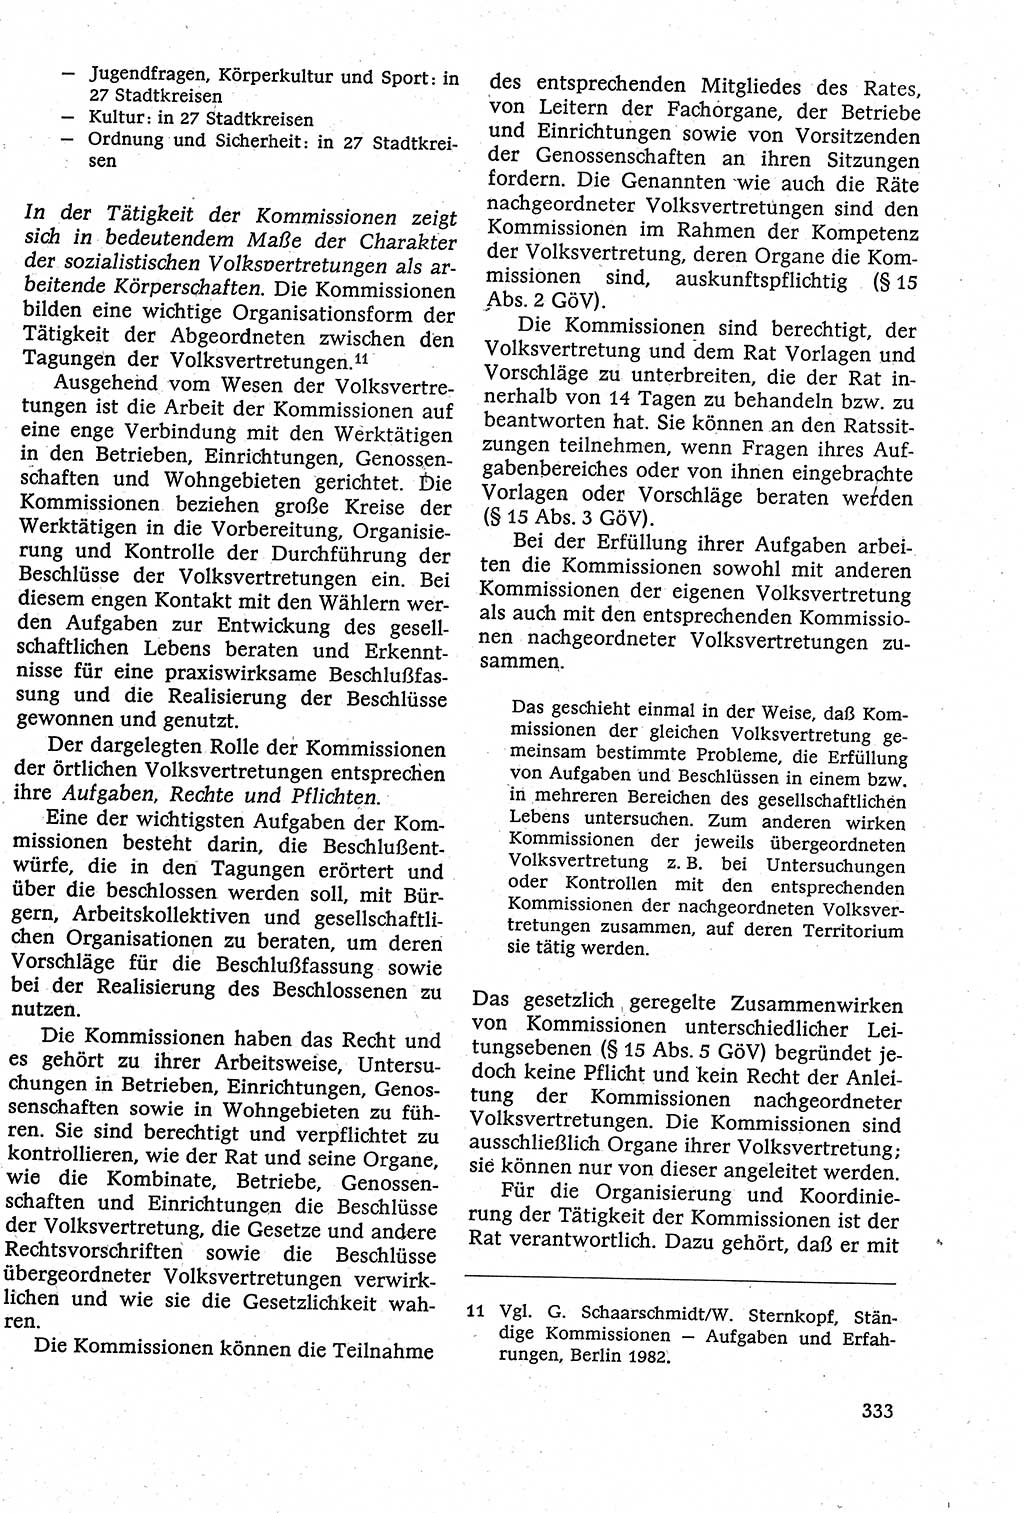 Staatsrecht der DDR [Deutsche Demokratische Republik (DDR)], Lehrbuch 1984, Seite 333 (St.-R. DDR Lb. 1984, S. 333)